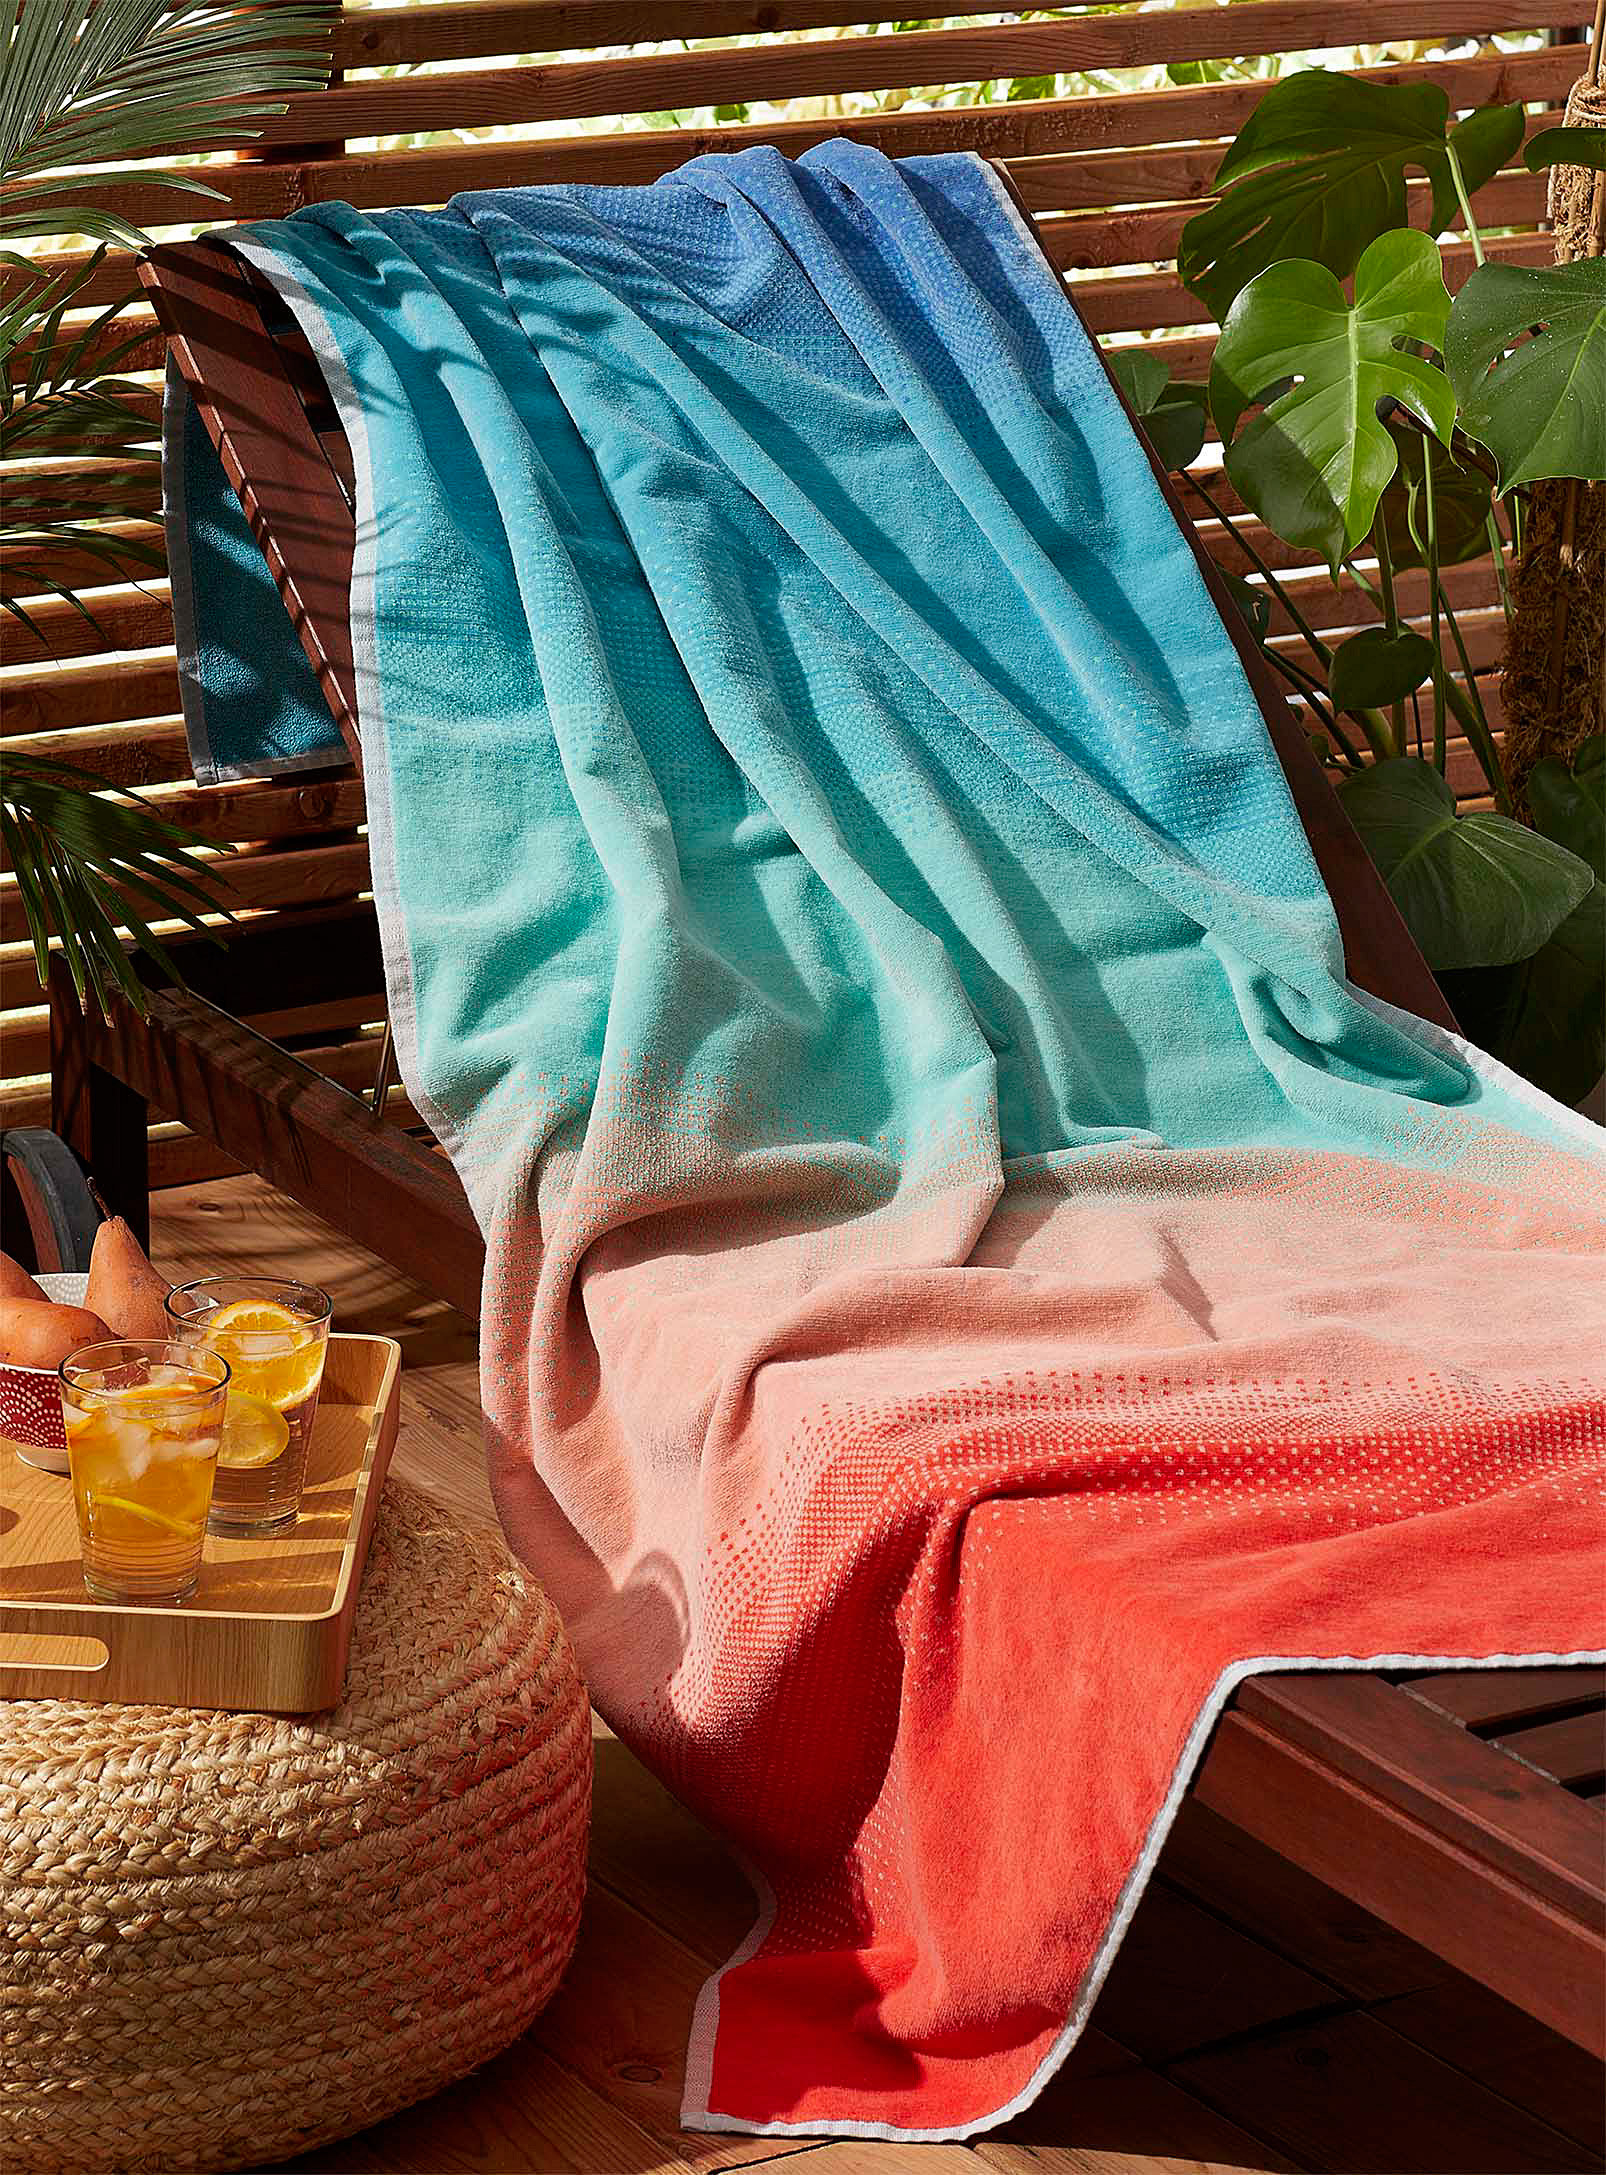 the beach towel on a chair